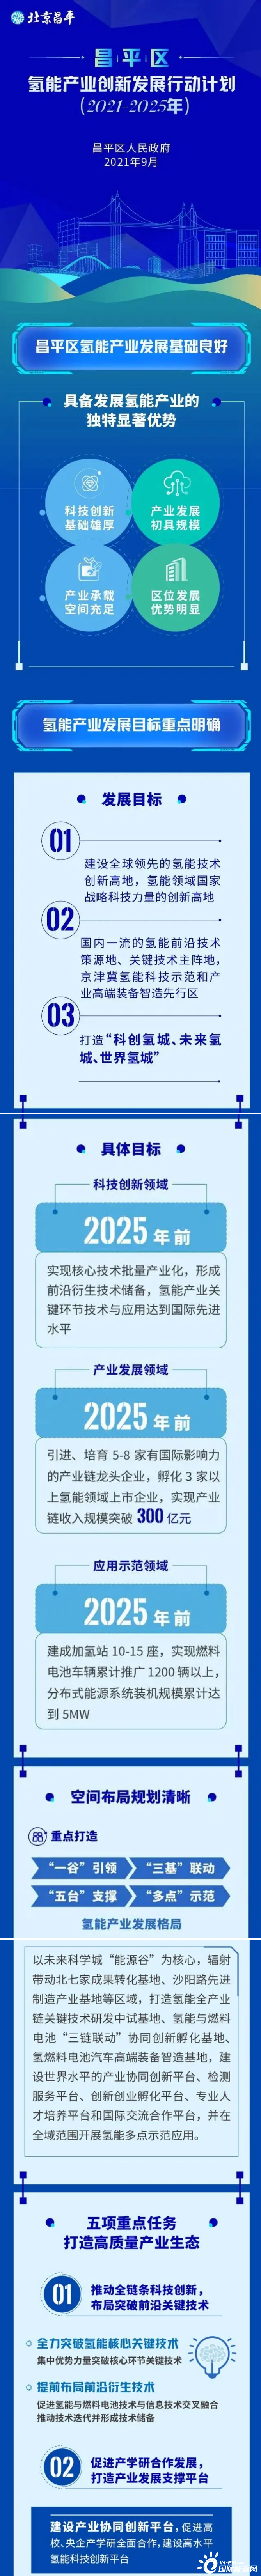 收入突破300亿！推广燃料电池车1200辆以上！北京昌平区连发两文支持氢能发展！